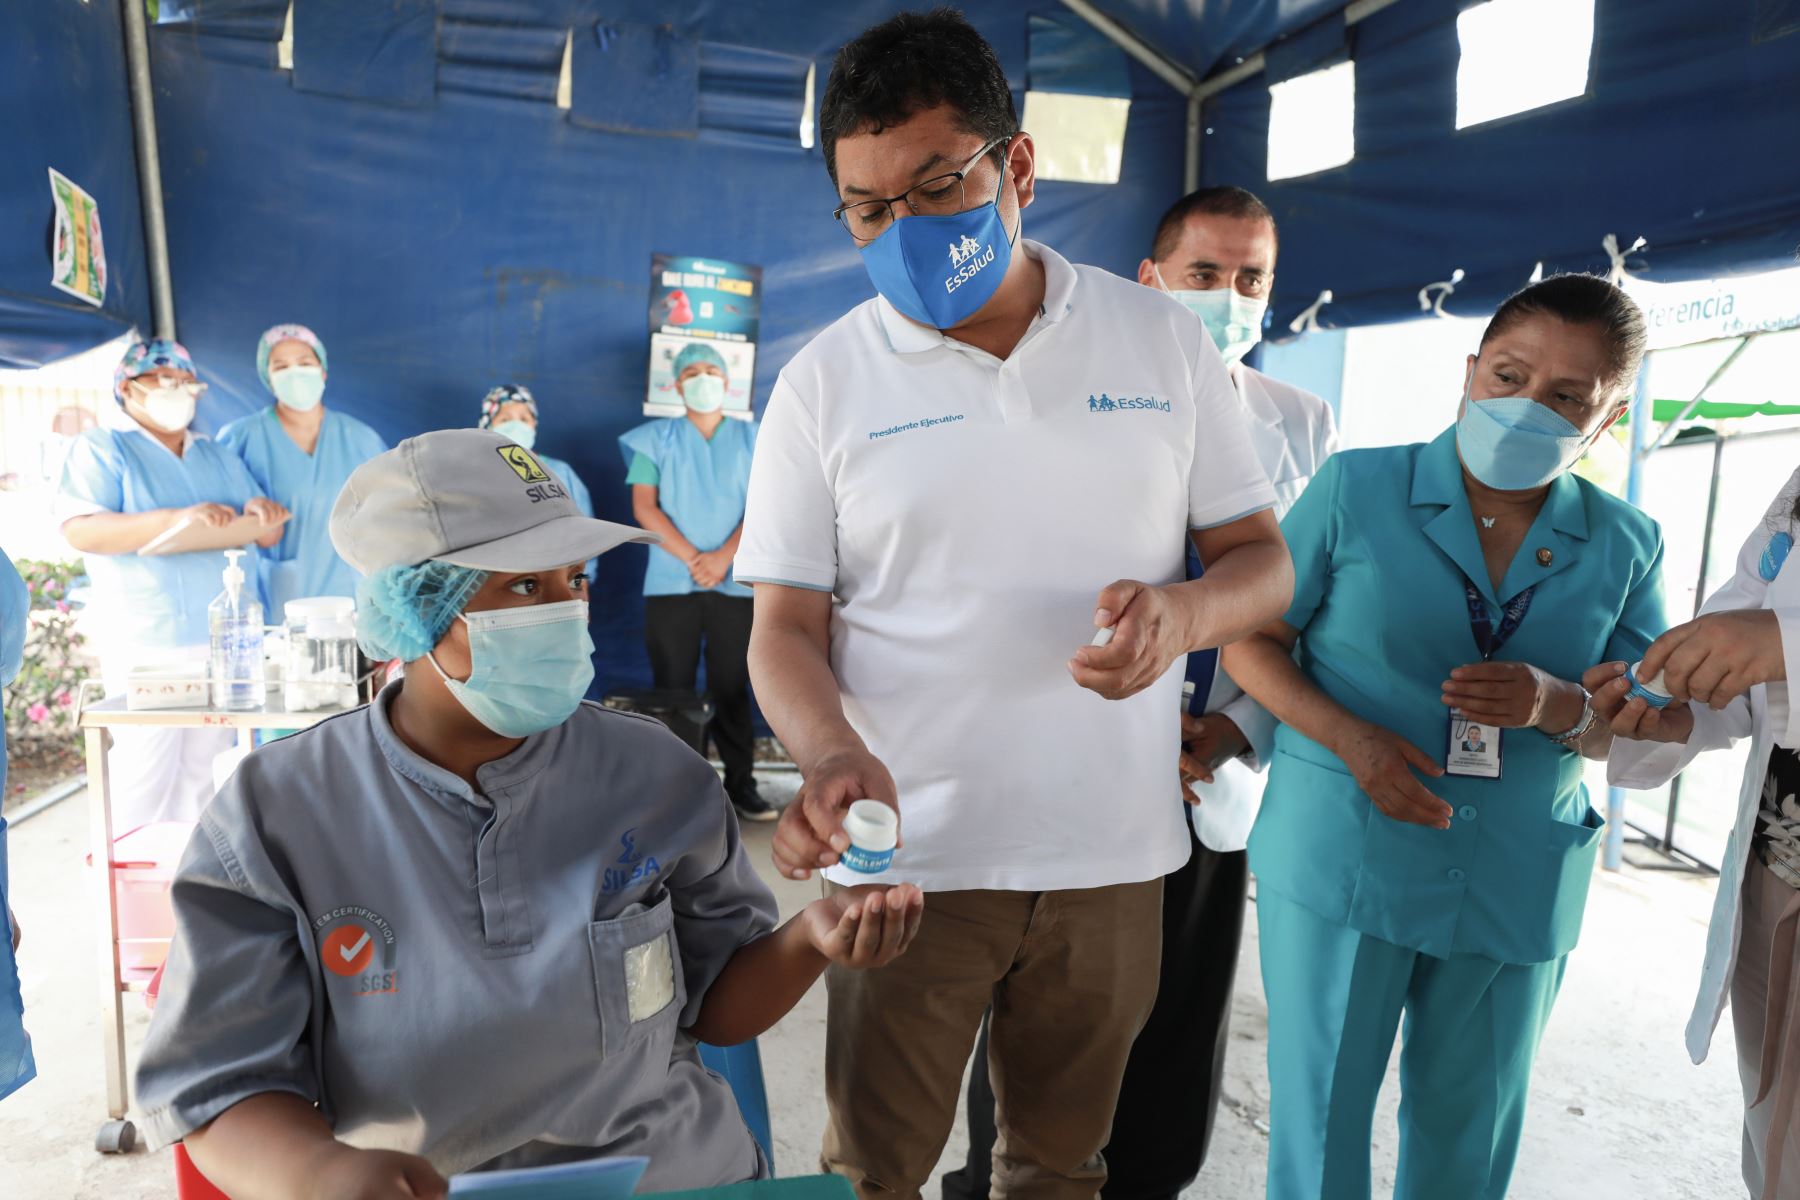 Presidente del Seguro Social supervisó entrega gratuita de repelentes elaborados por EsSalud para evitar propagación del dengue.
Foto: ANDINA/ EsSalud